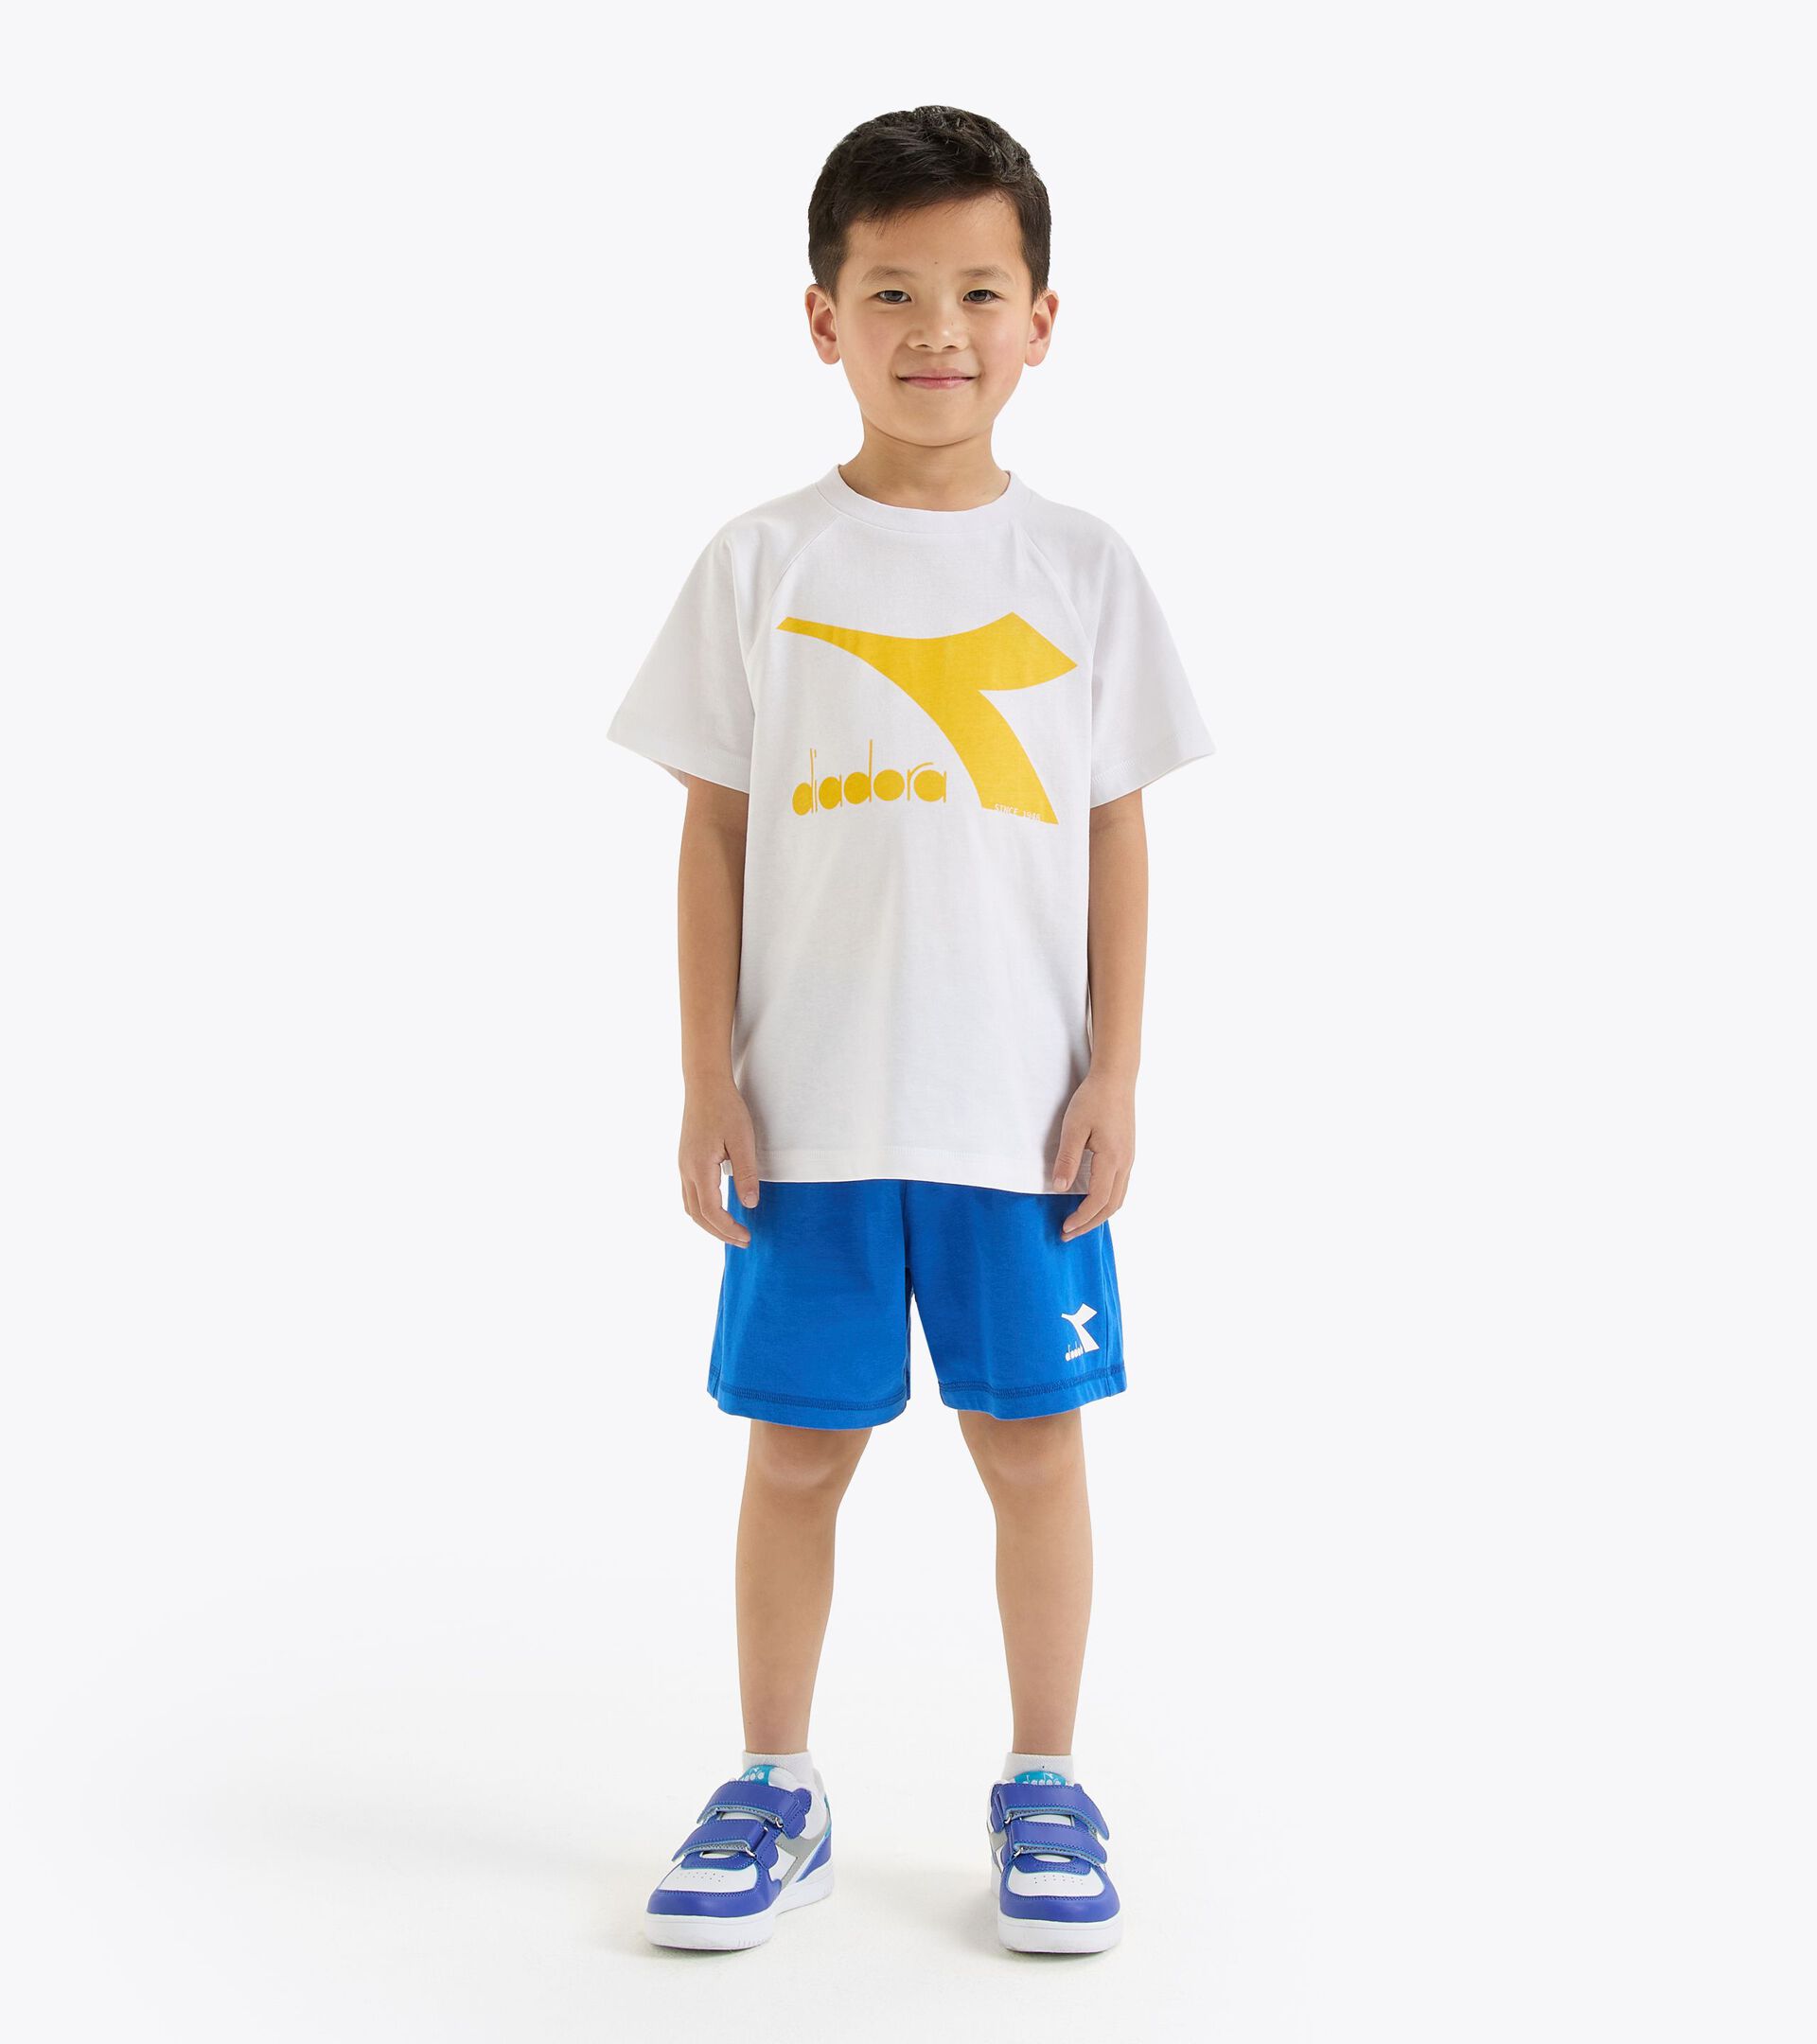 Conjunto deportivo - Camiseta y pantalones cortos - Unisex - Niños/niñas y adolescentes JU. SET SS CORE BLANCO VIVO - Diadora